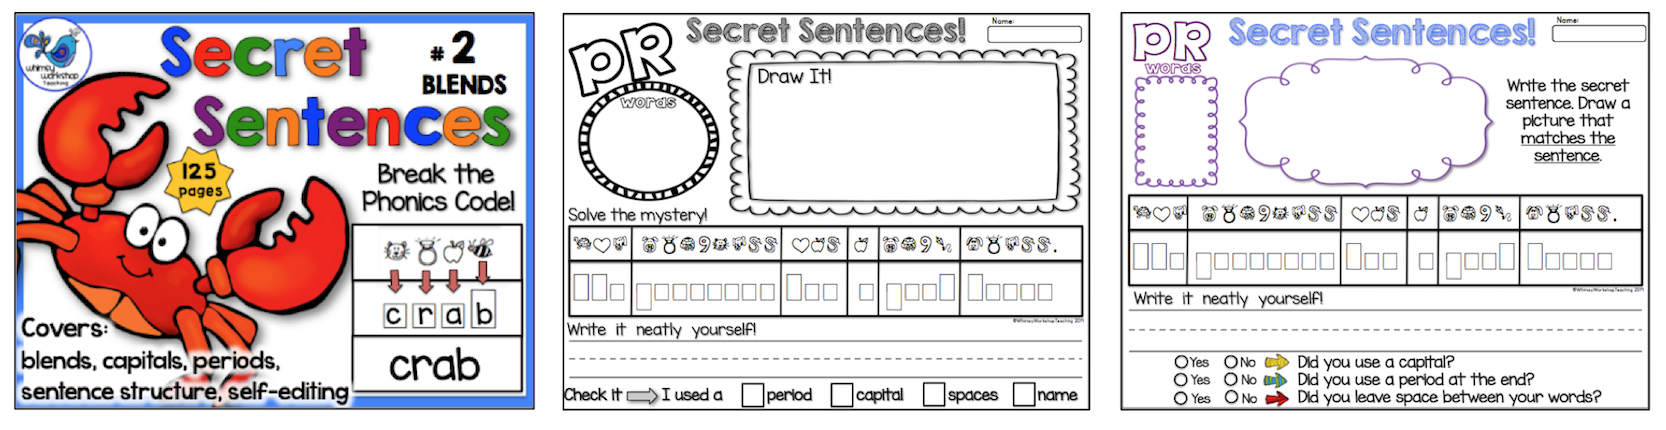 secret-sentences-2-whimsy-workshop-teaching